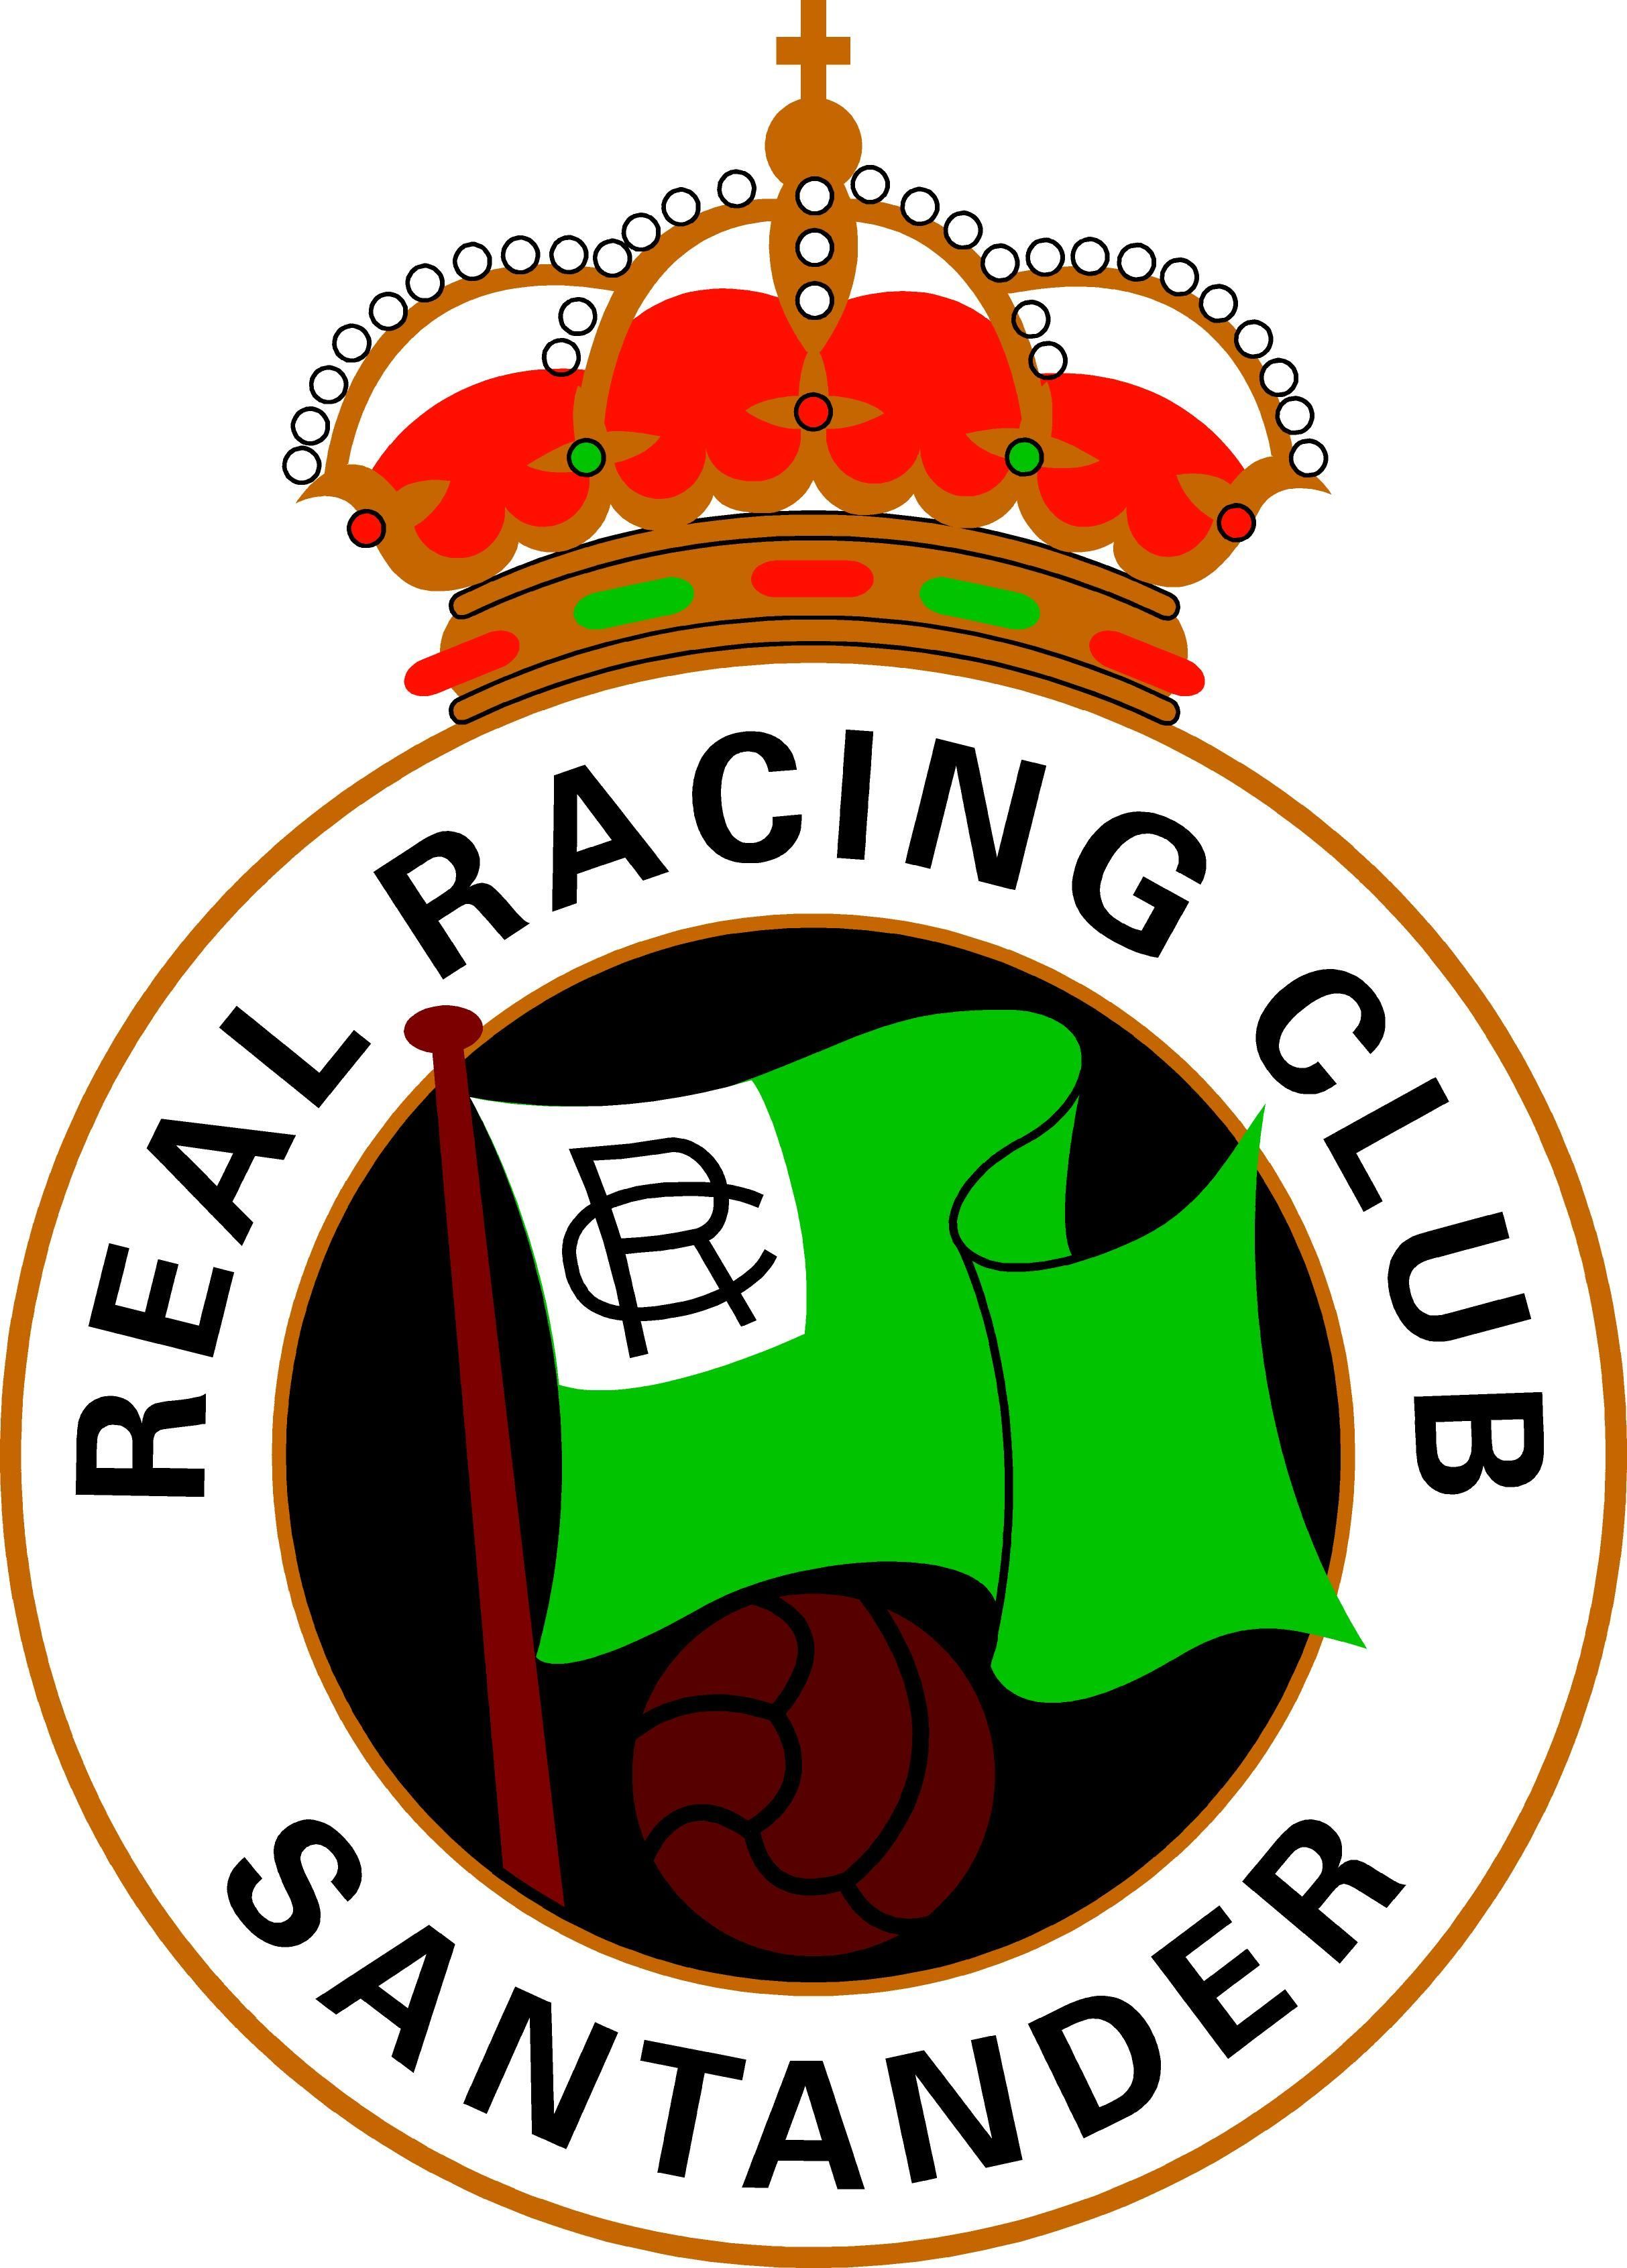 Viralízalo / ¿Cuánto sabes del Real Racing Club de Santander?